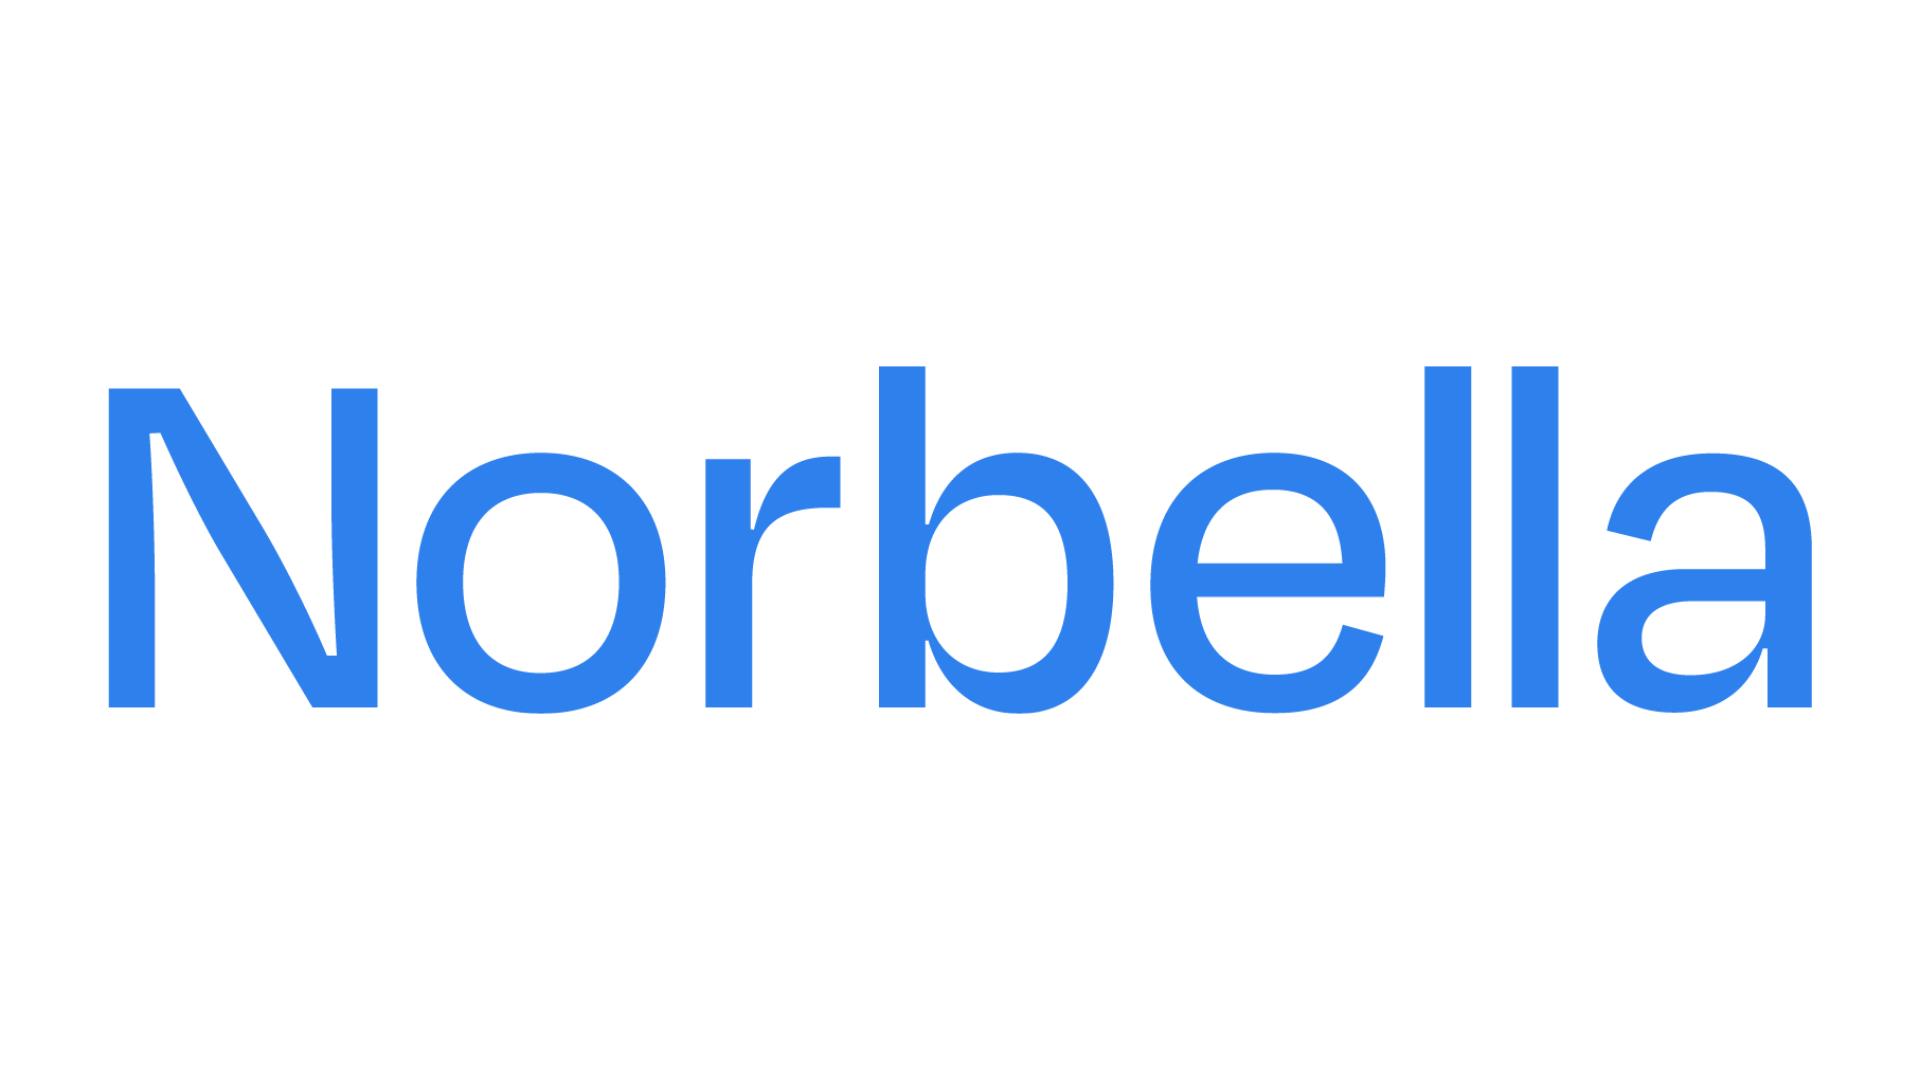 Norbella